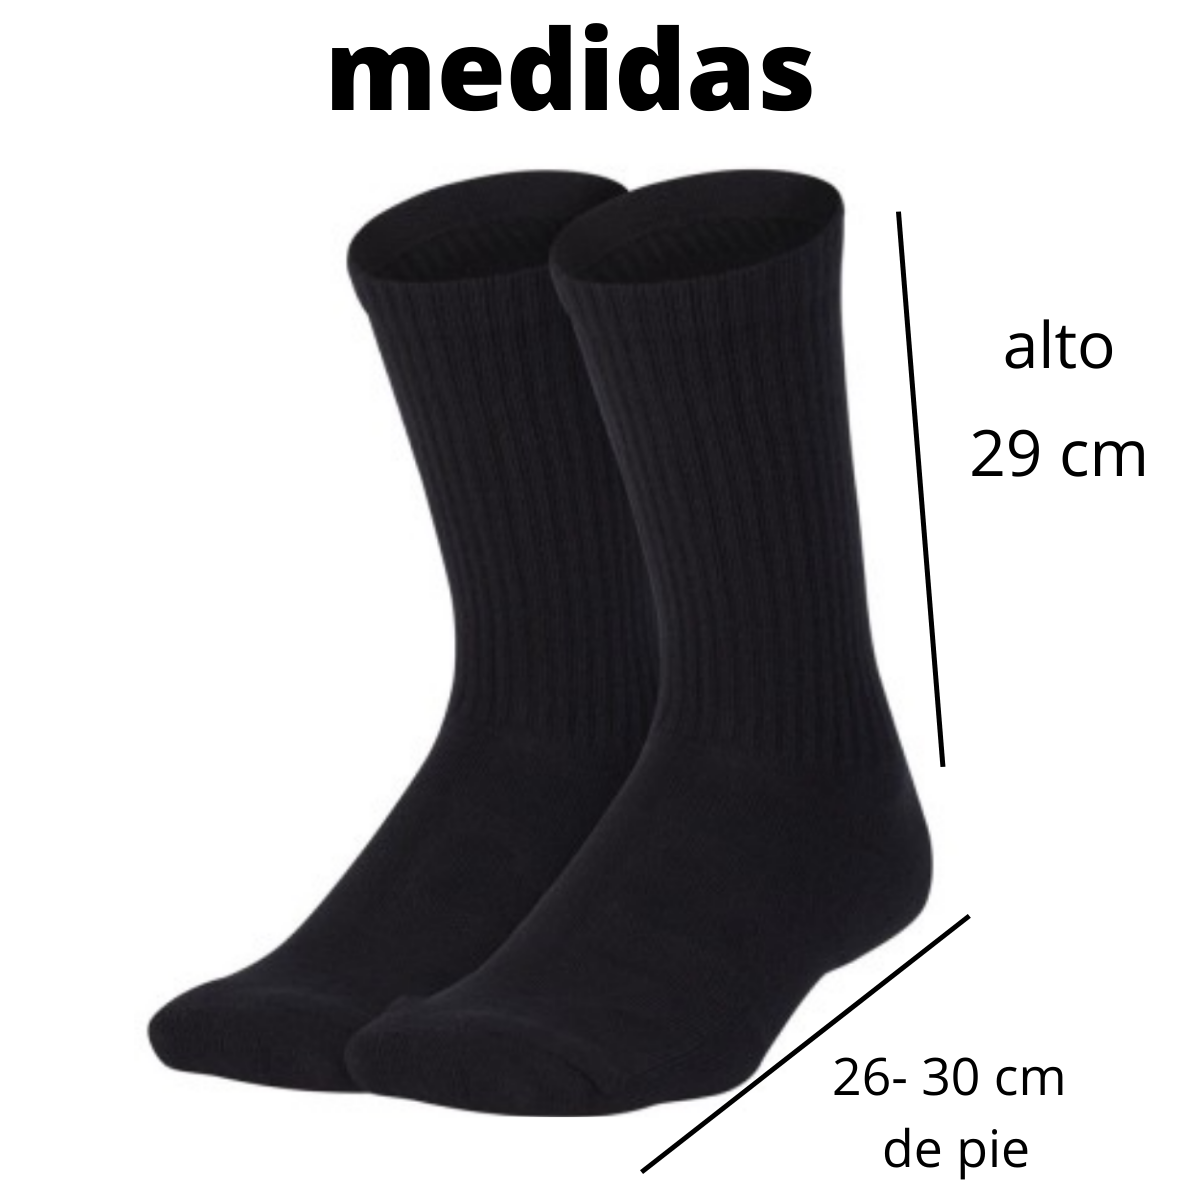 calcetas largas deportivas algodon (1 par)